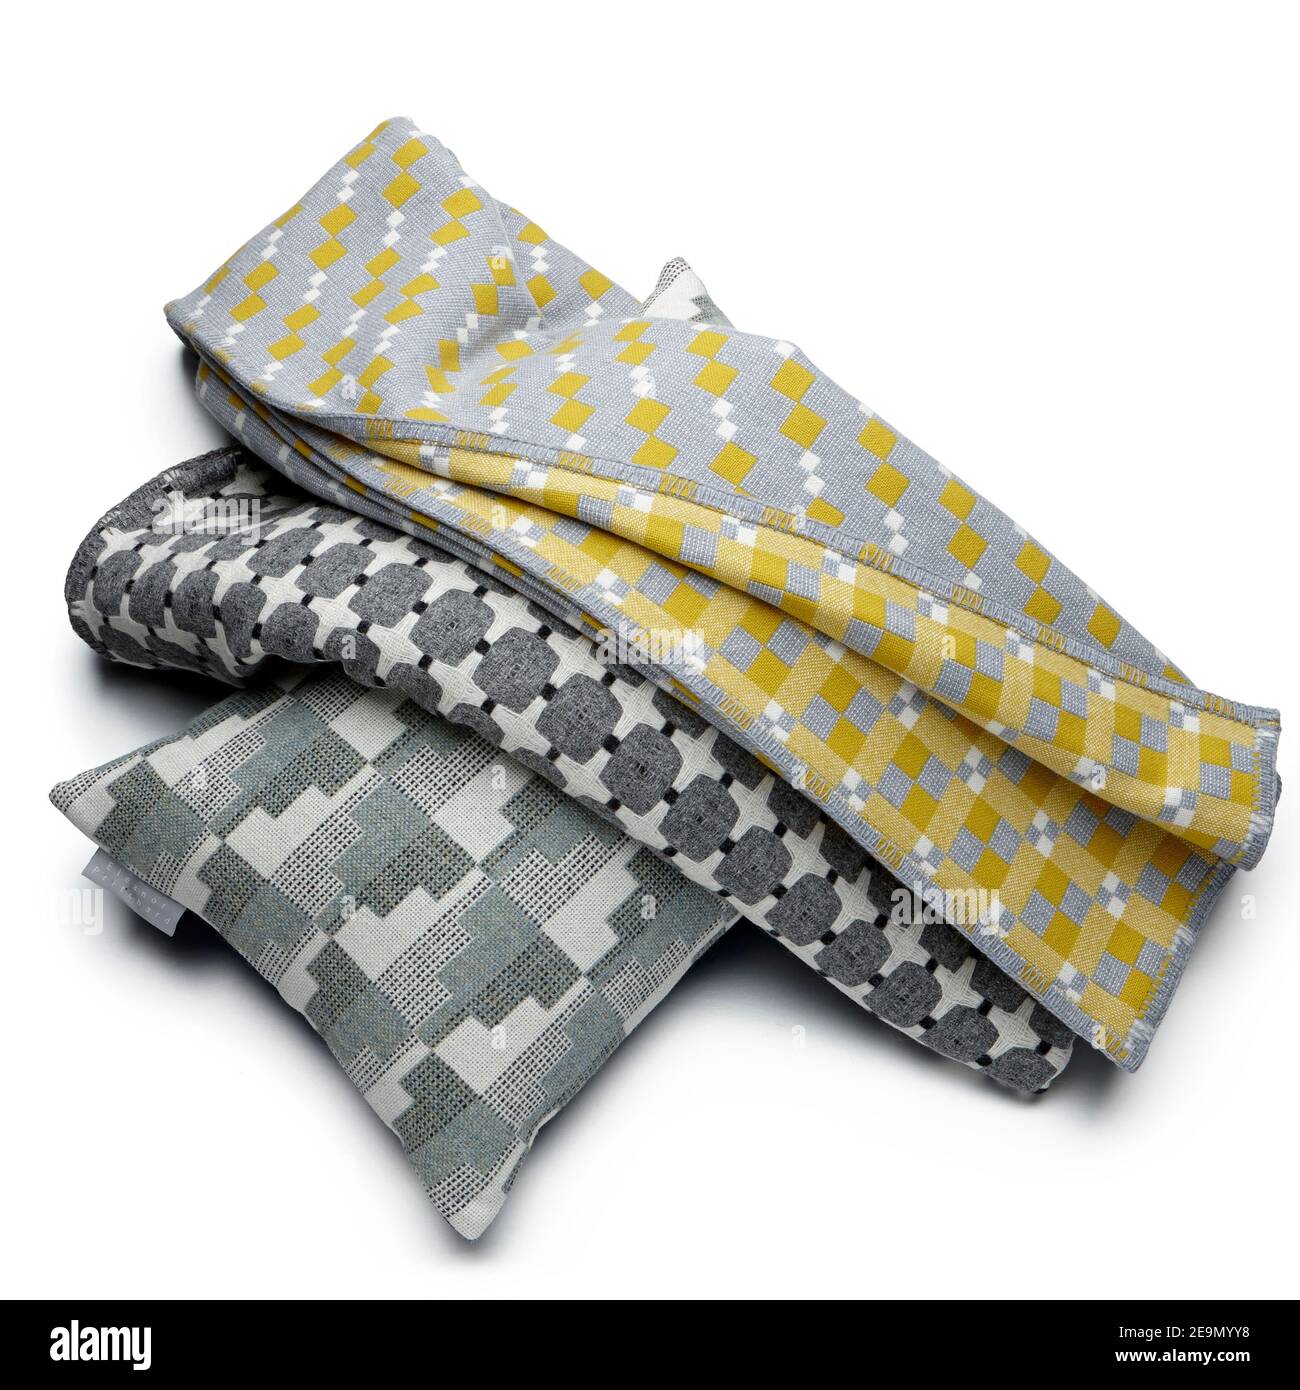 Gettare coperta scialle materiale spagnolo moderno taglio-out tessuto cotone di lana tessuto Foto Stock